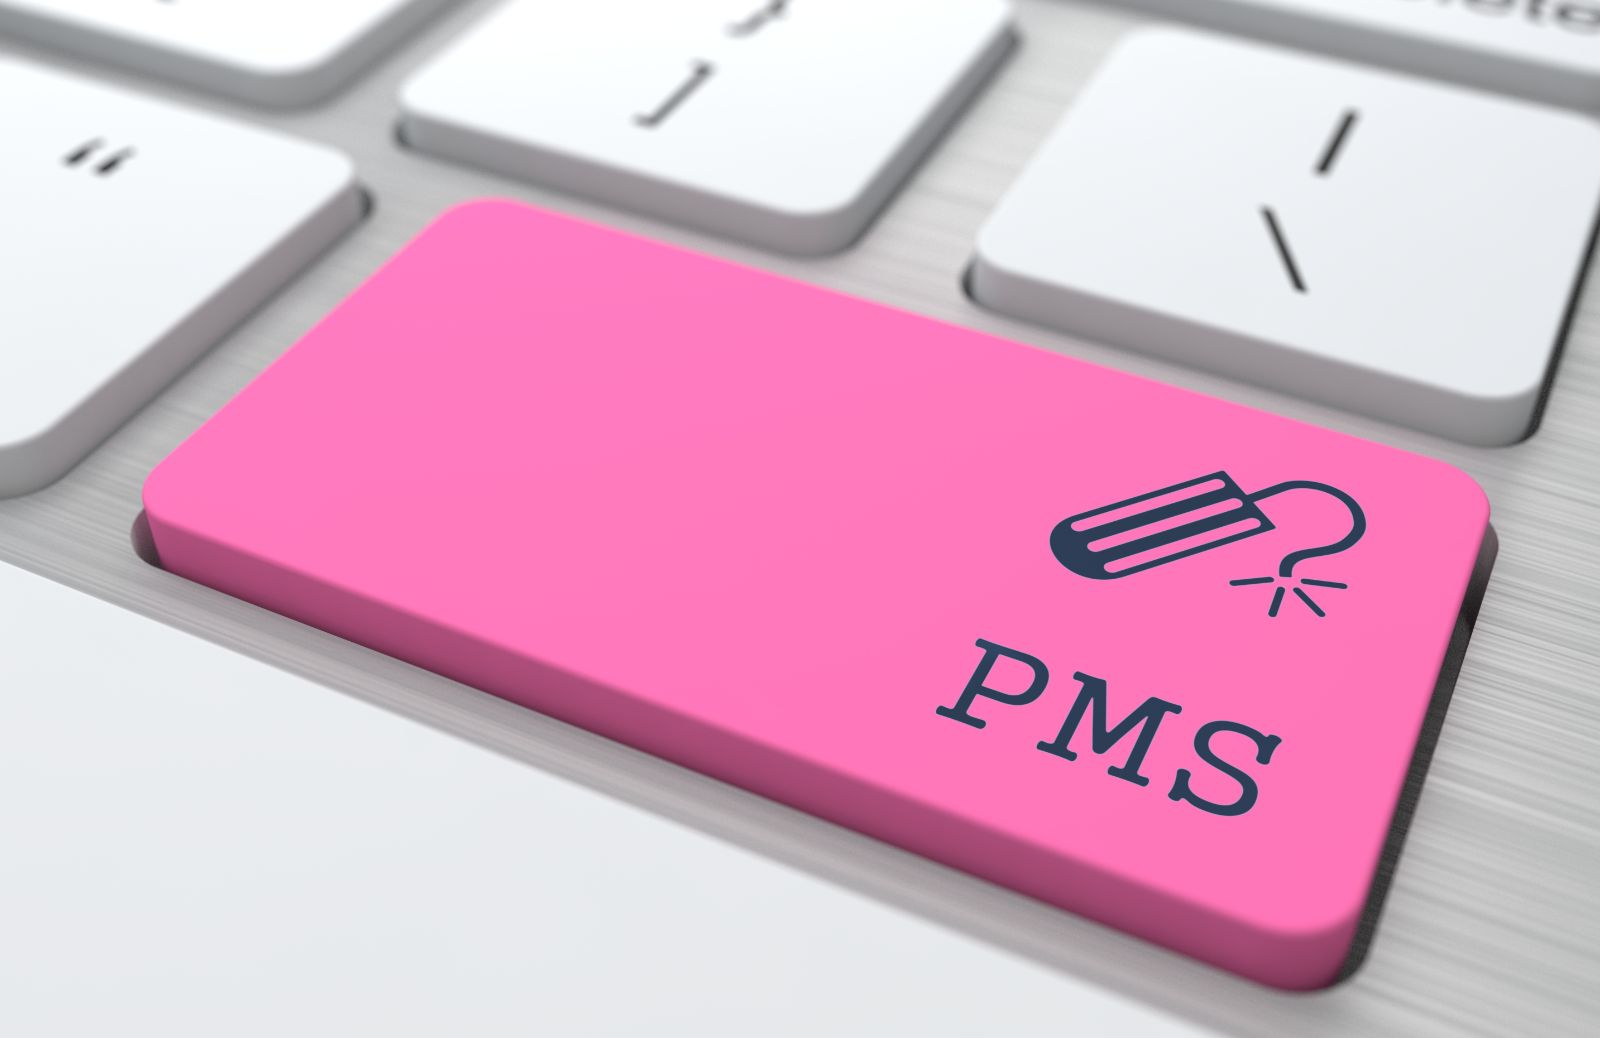 SOS PMS, l'app che segnala agli uomini i giorni critici del ciclo